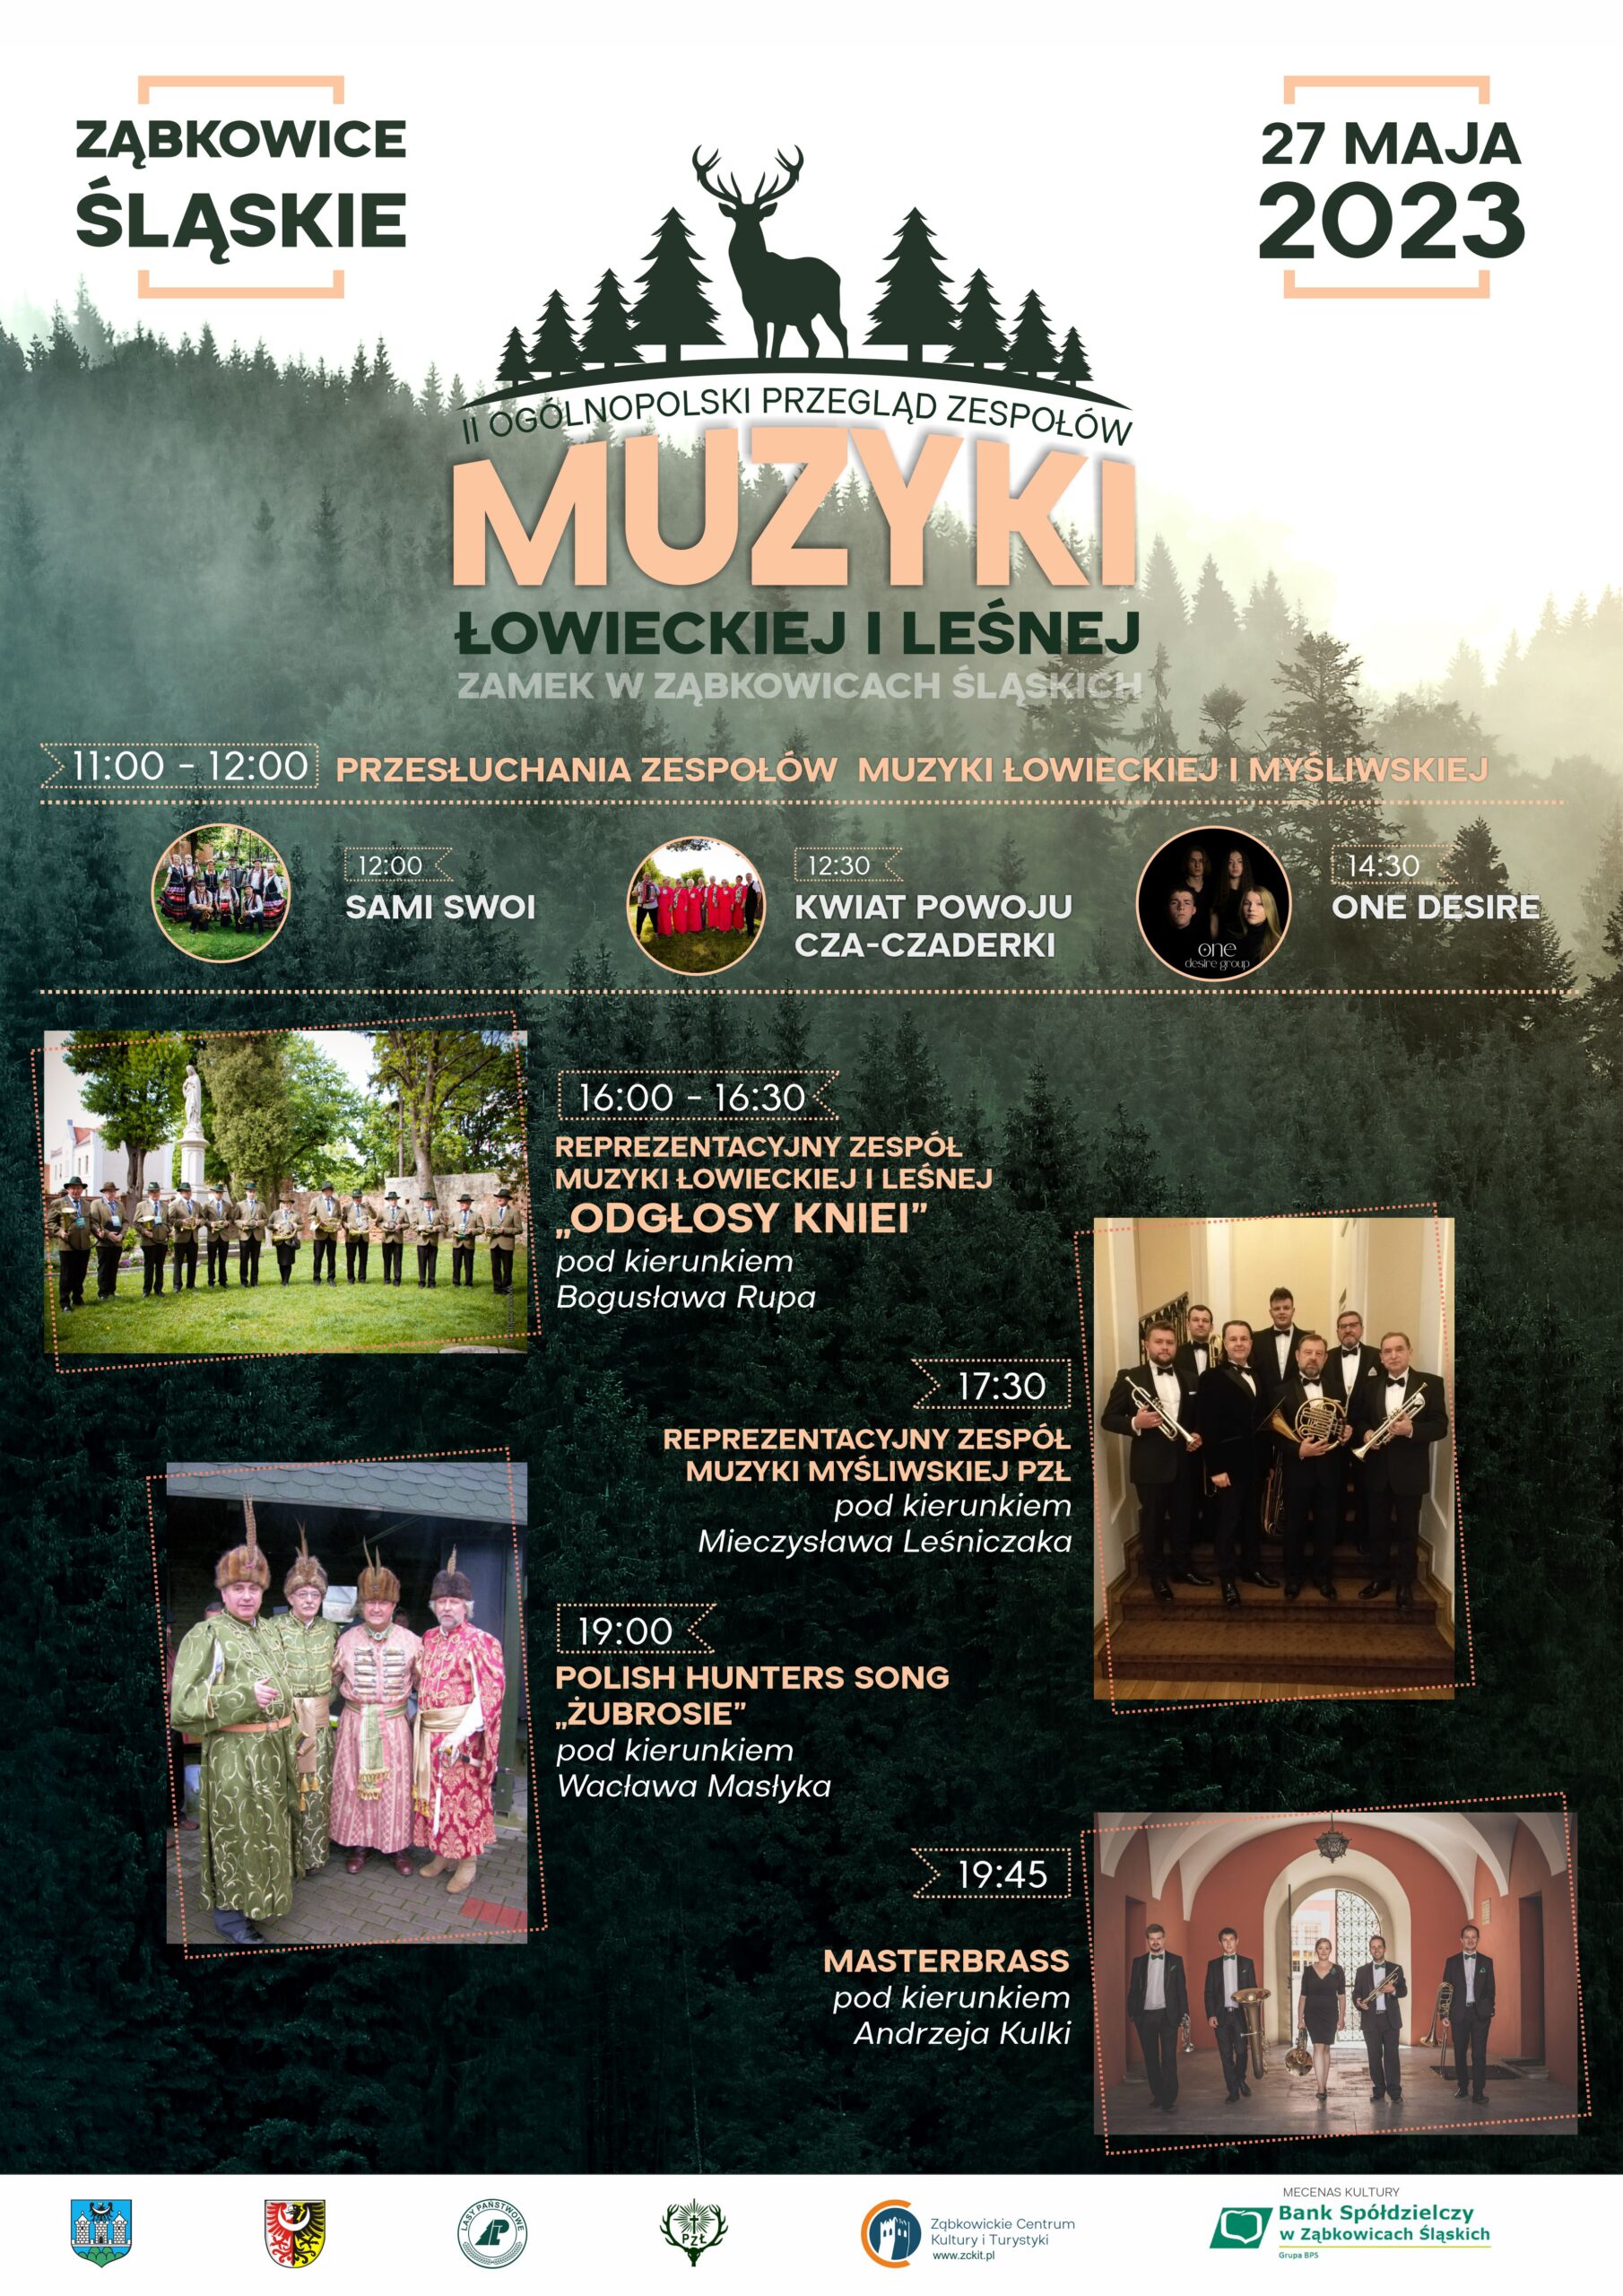 Plakat informujący o II Ogólnopolskim Przeglądzie Zespołów Muzyki Łowieckiej i Leśnej 27 maja 2023 w Ząbkowicach Śląskich.